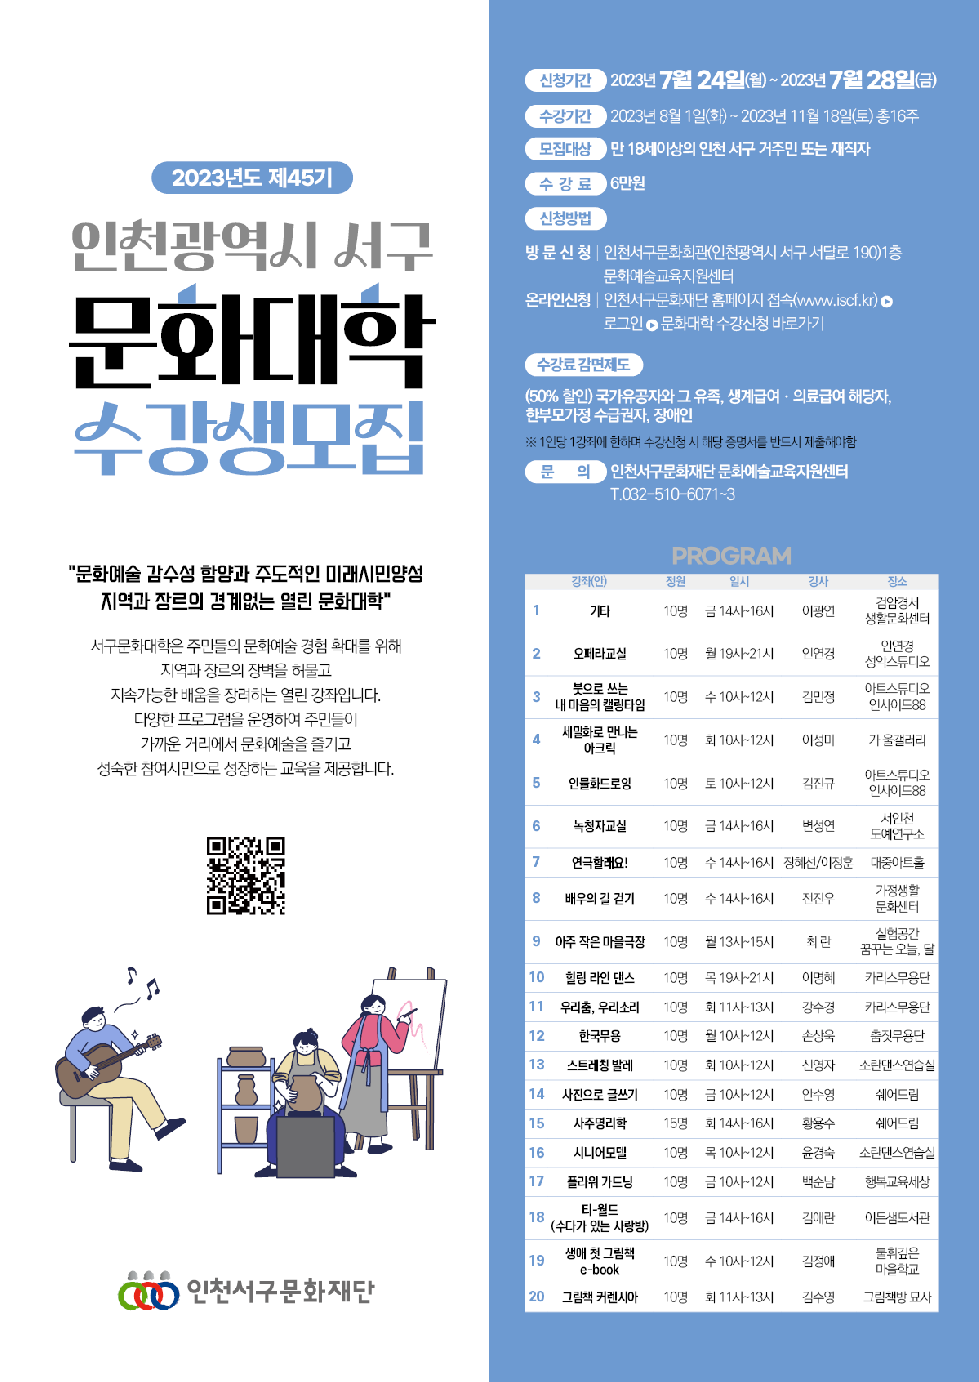 인천 서구문화재단, 제45기 문화대학 하반기 수강생 모집